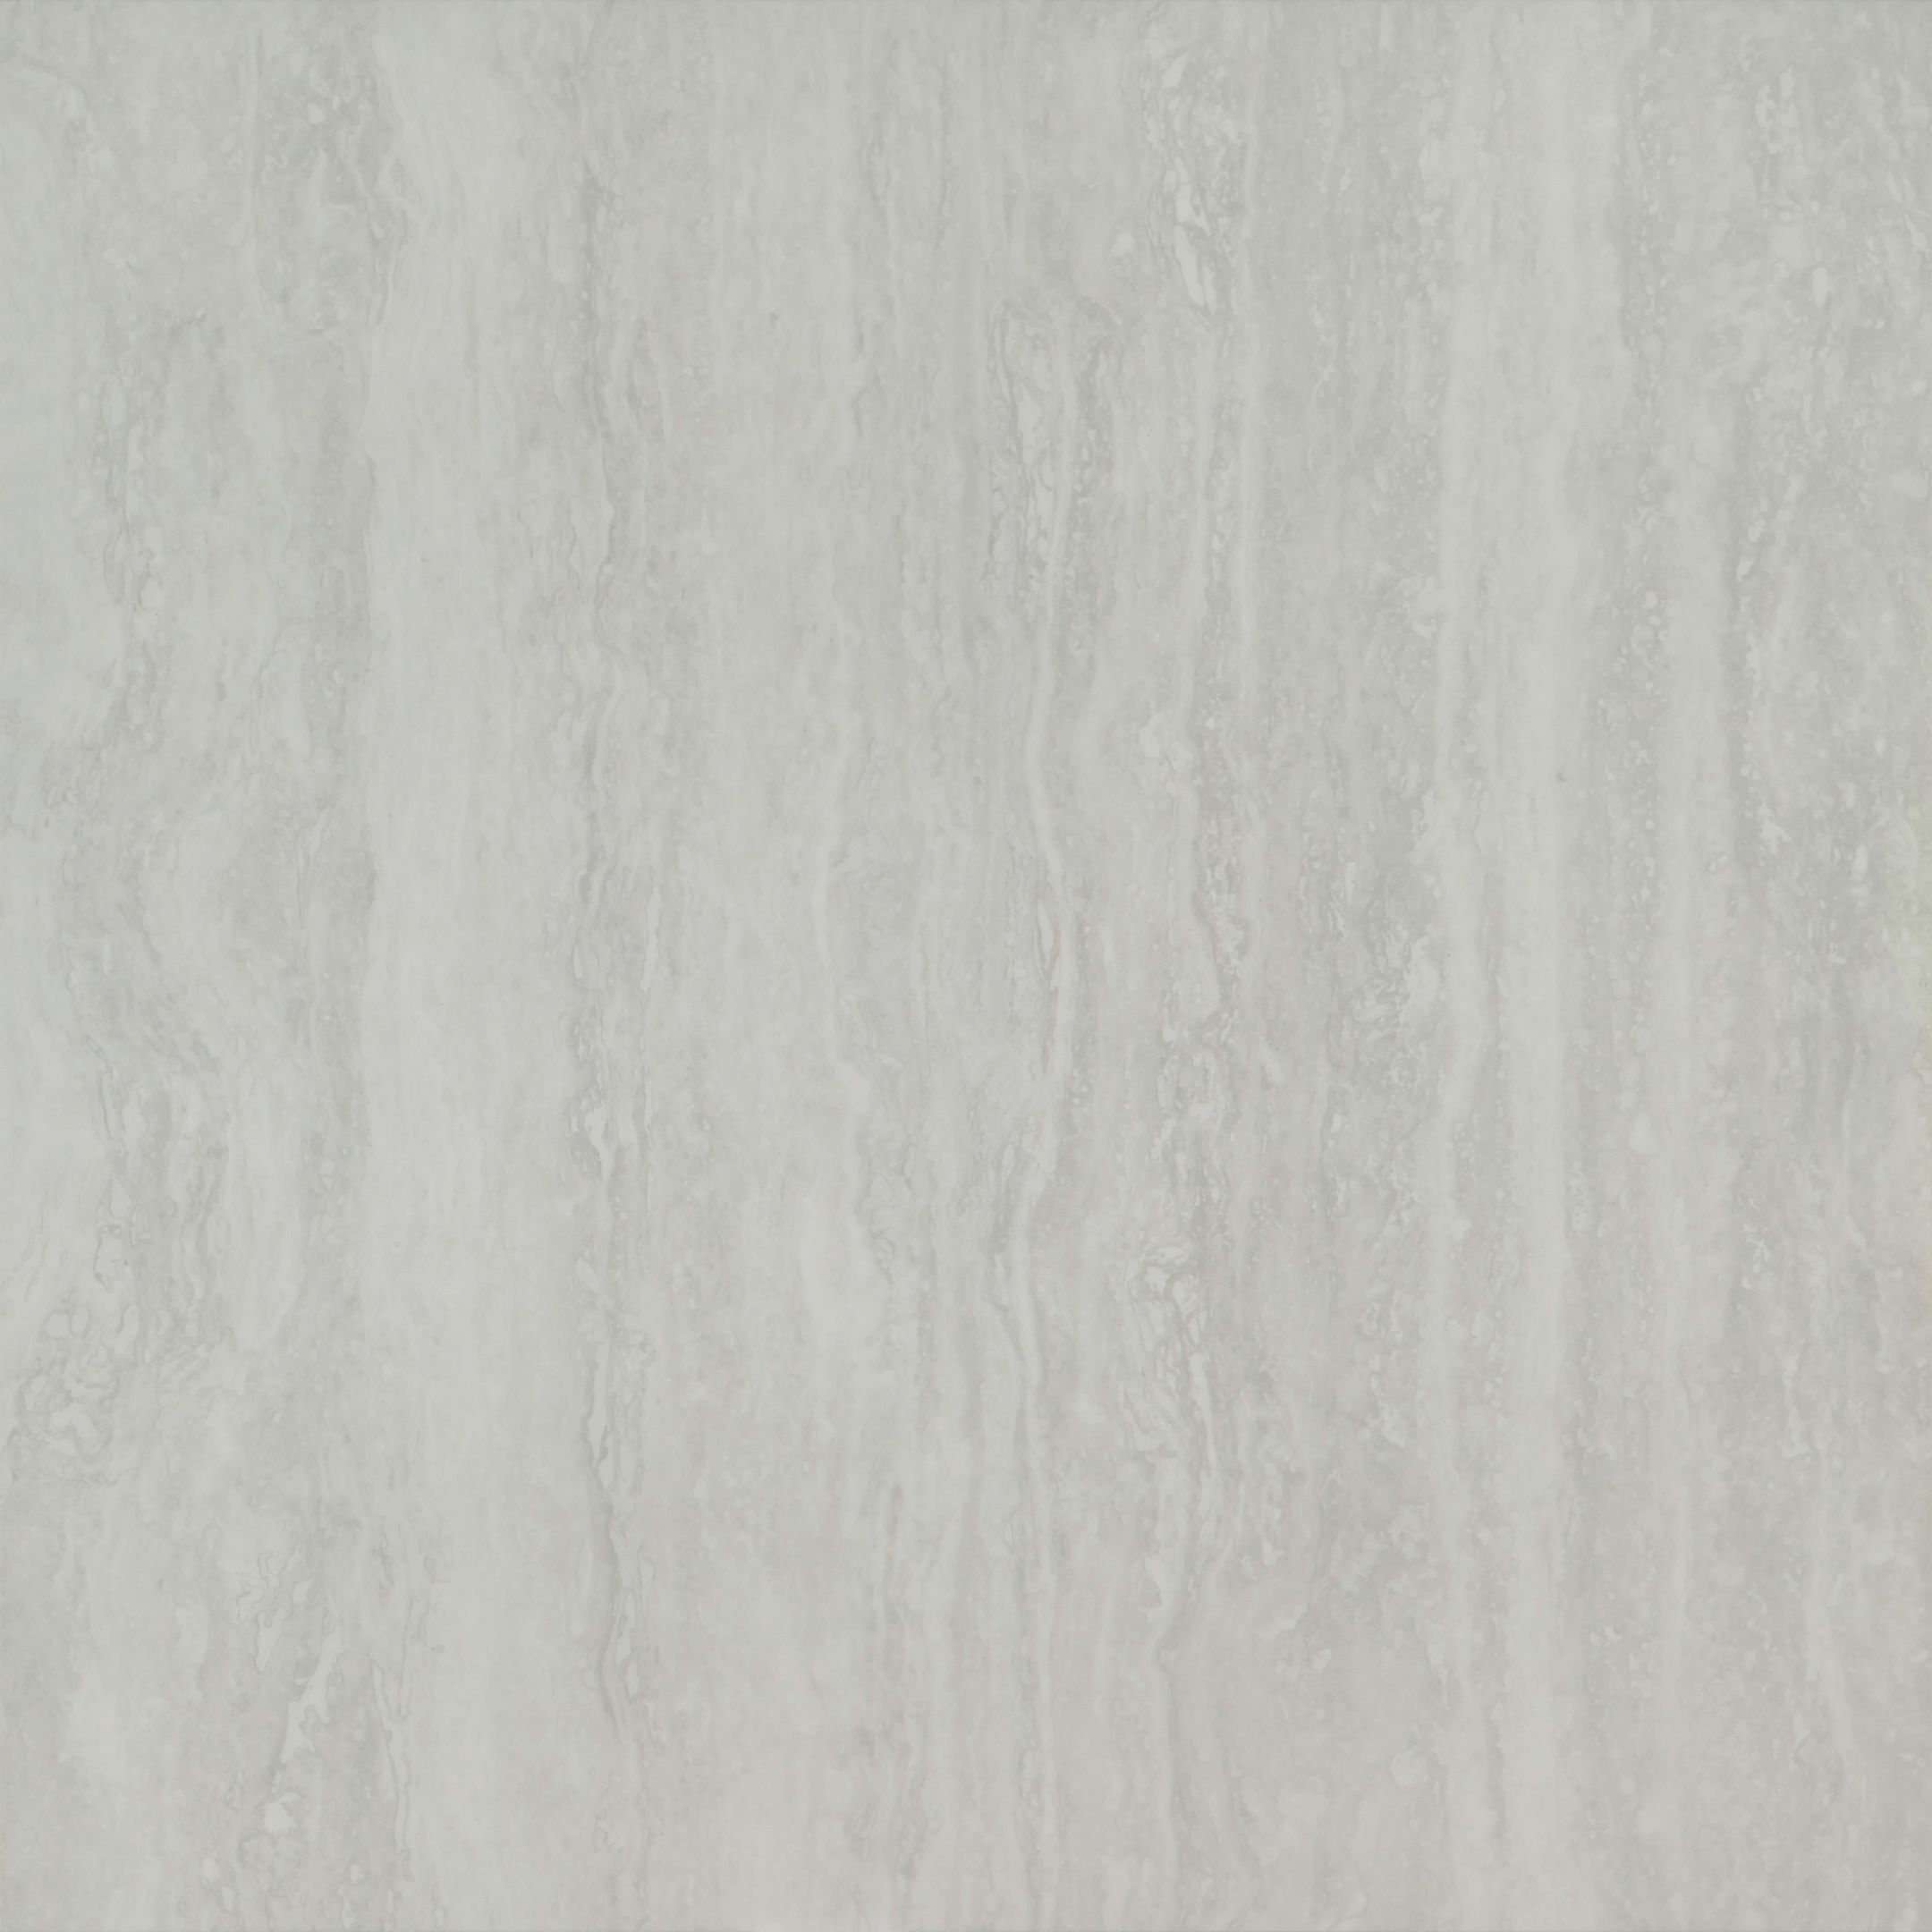 фото Керамогранит уг гранитея аллаки светло-серый g203 полированный 600х600х10 мм (4 шт.=1,44 кв.м) уральский гранит